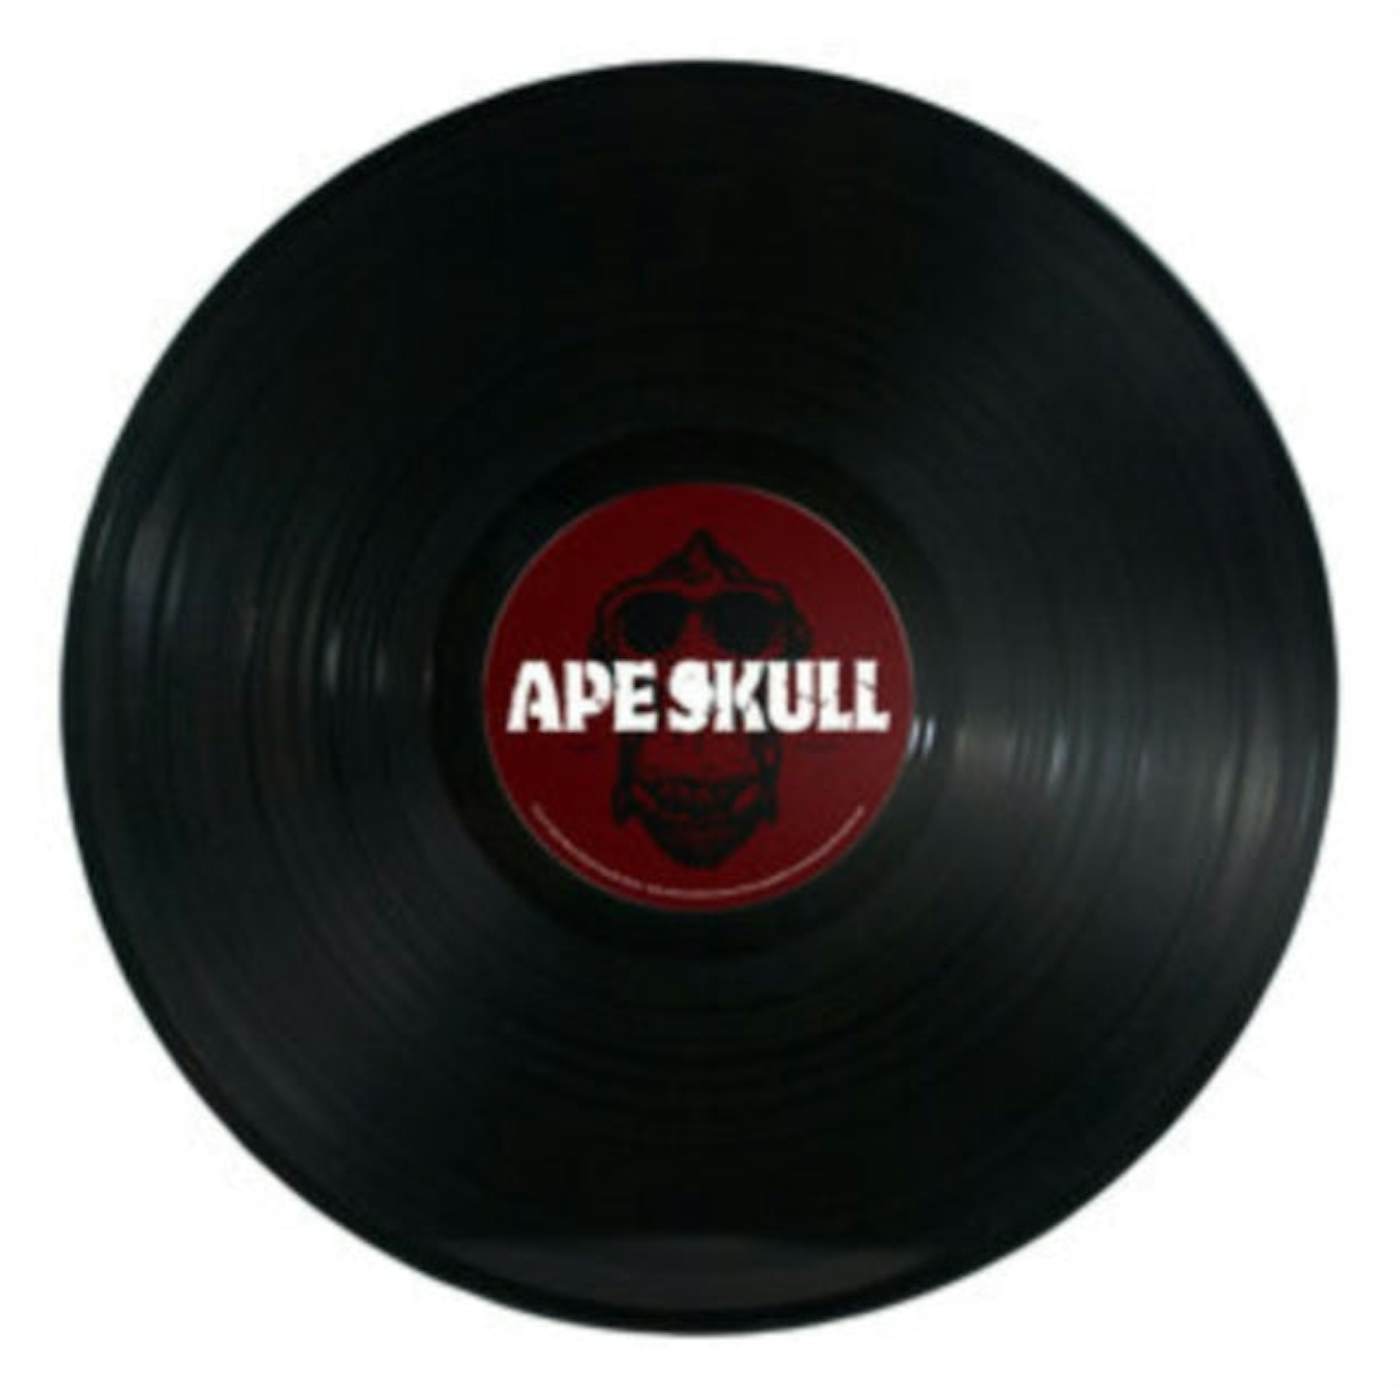 Ape Skull LP - Ape Skull (Vinyl)